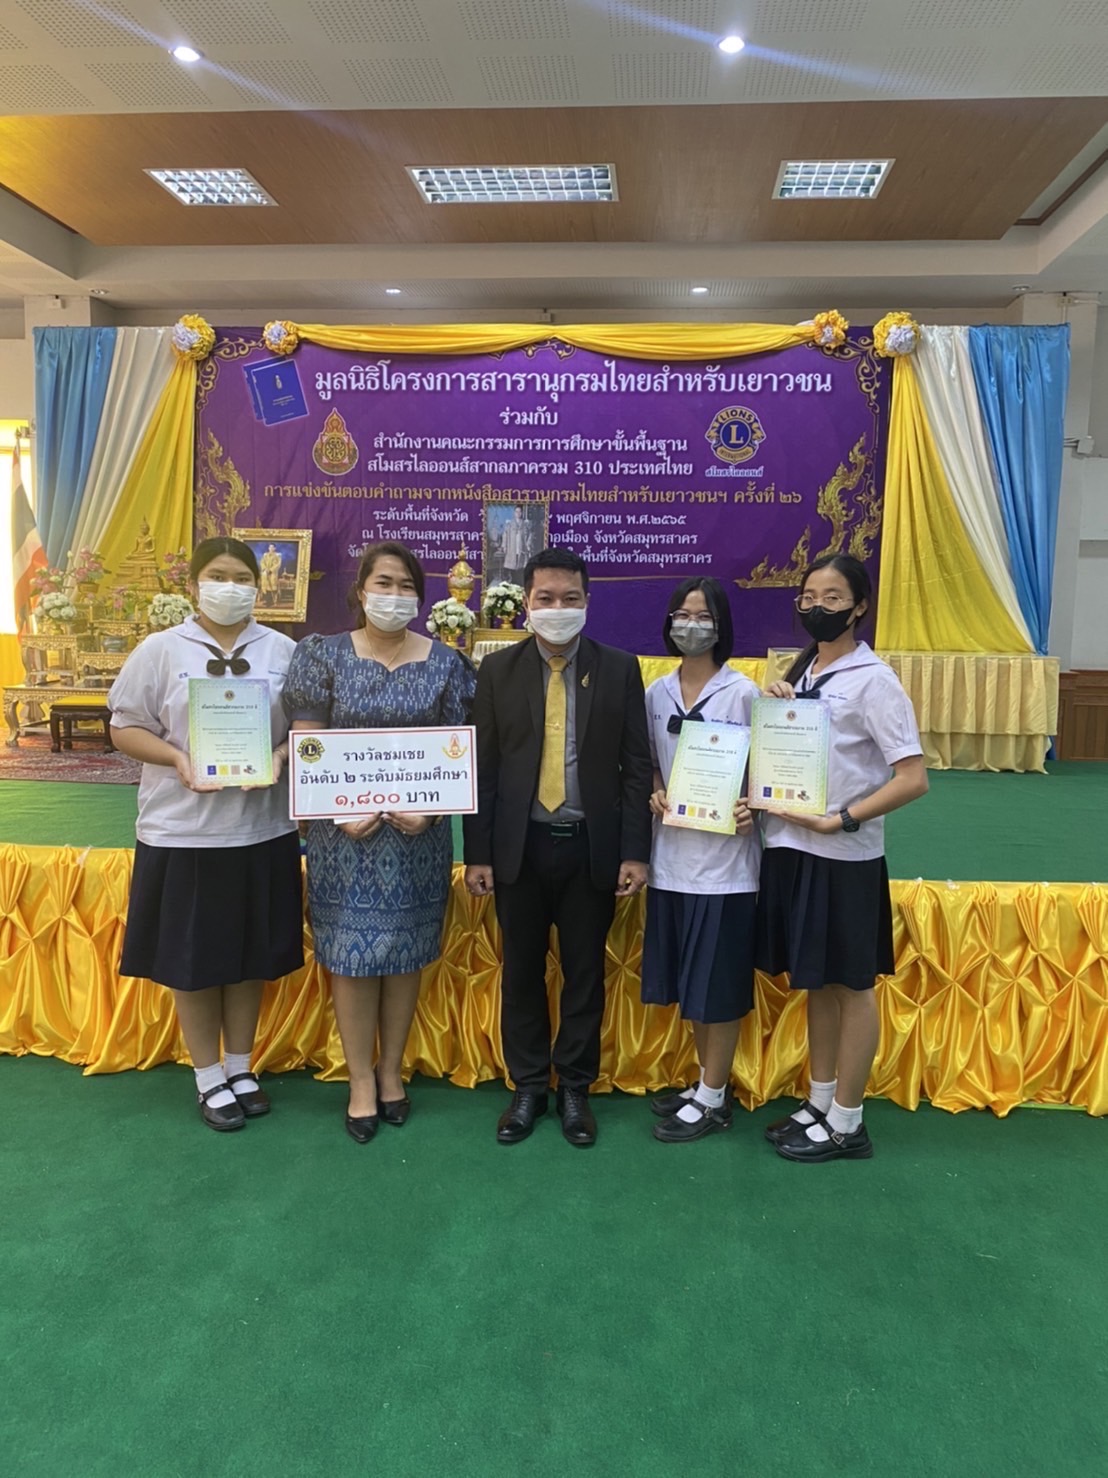 นักเรียนเข้าร่วมการแข่งขันตอบคำถามสารานุกรมไทยสำหรับเยาวชนฯ ครั้งที่ 26